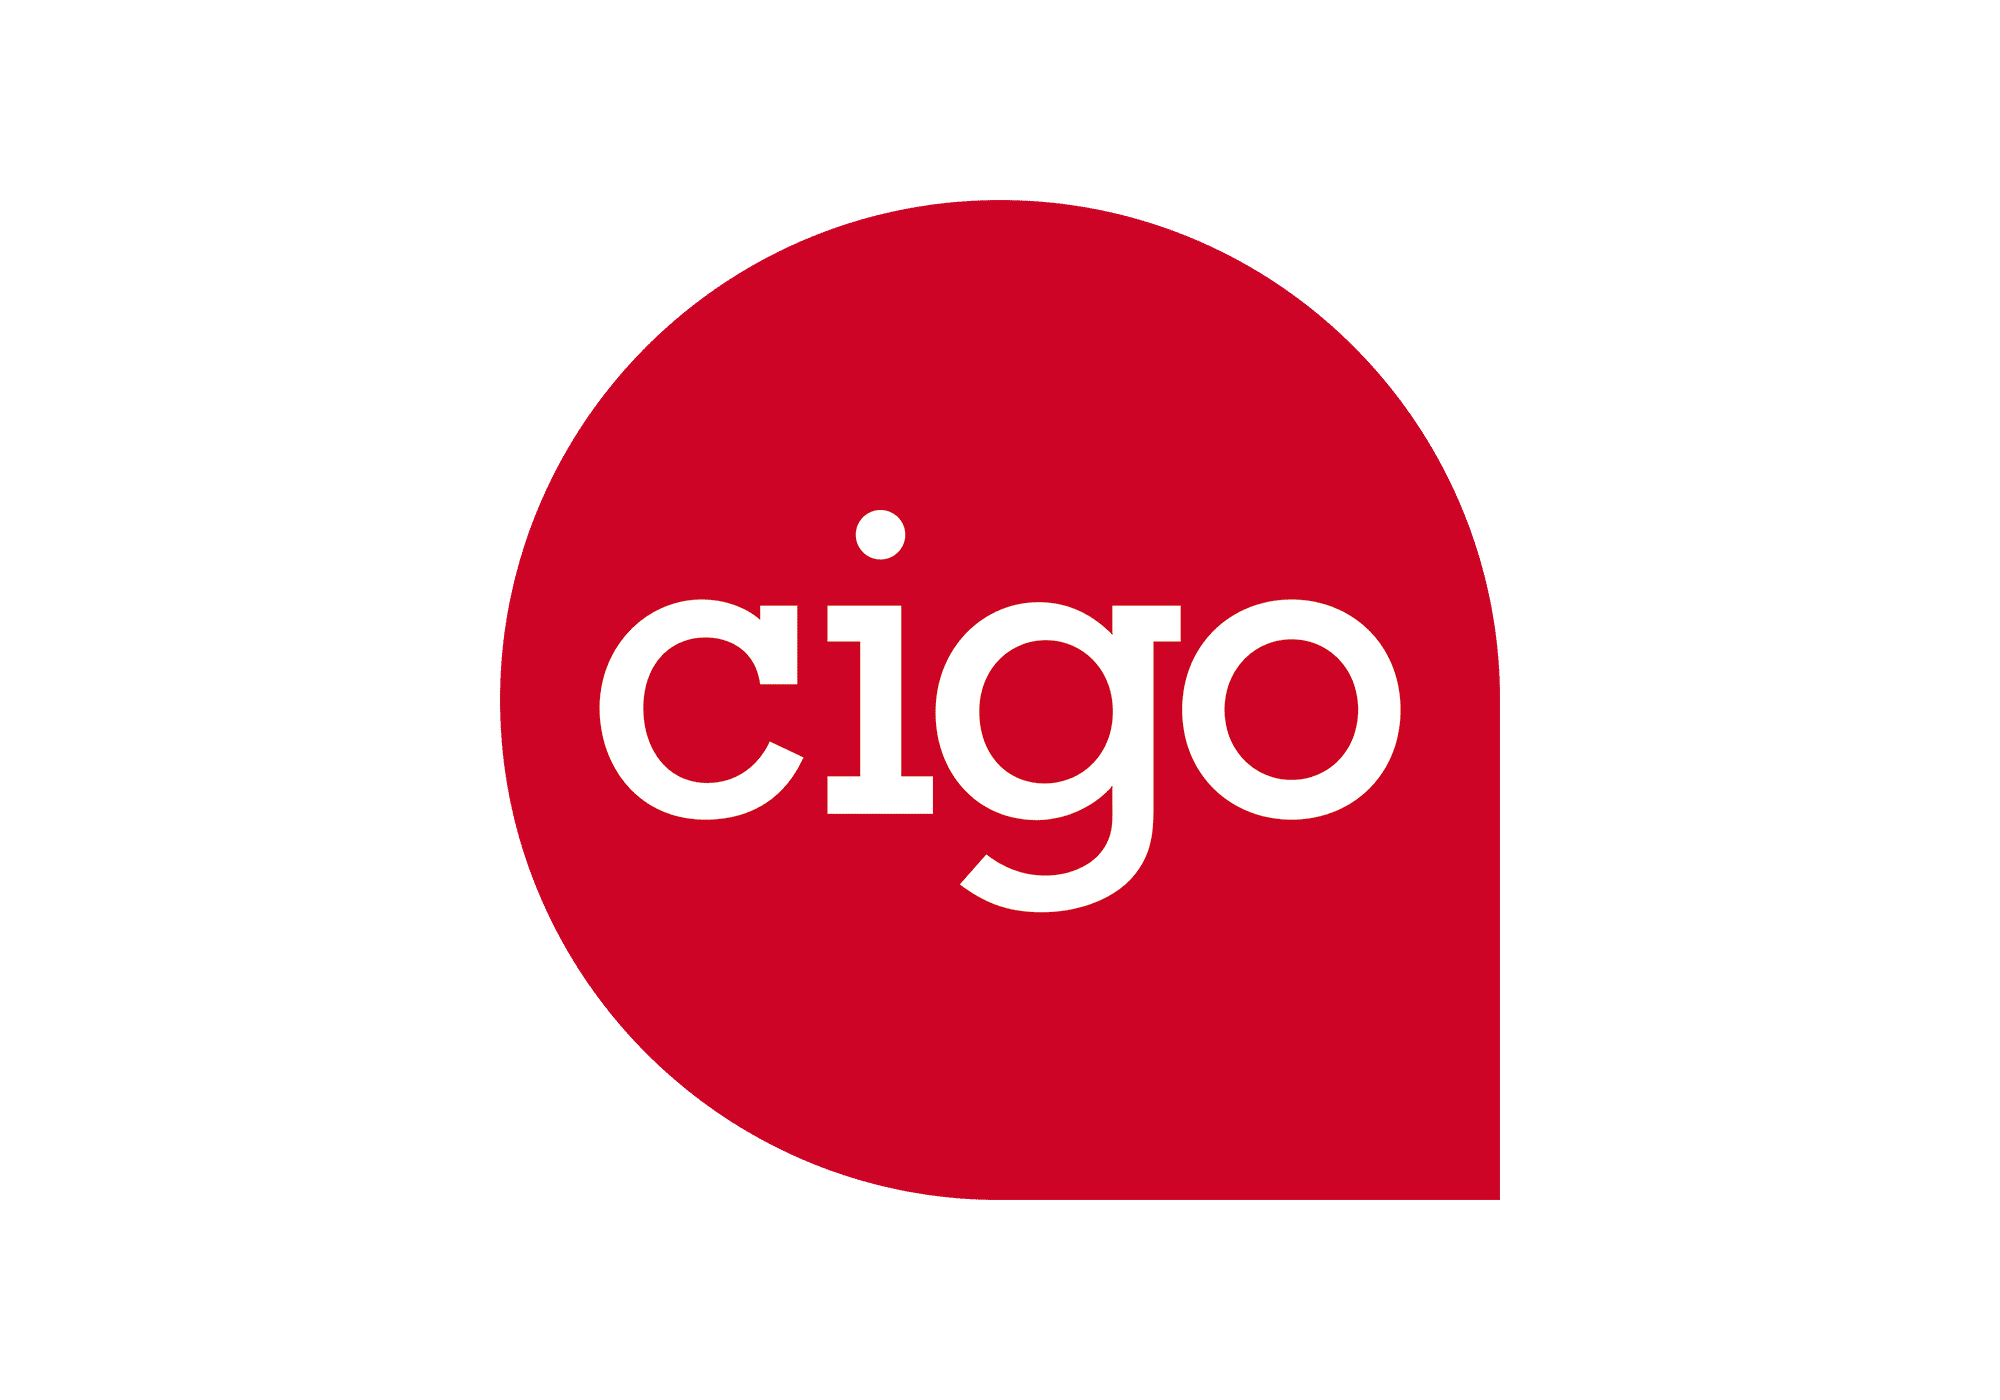 Cigo-Logo-1x1m_RZ